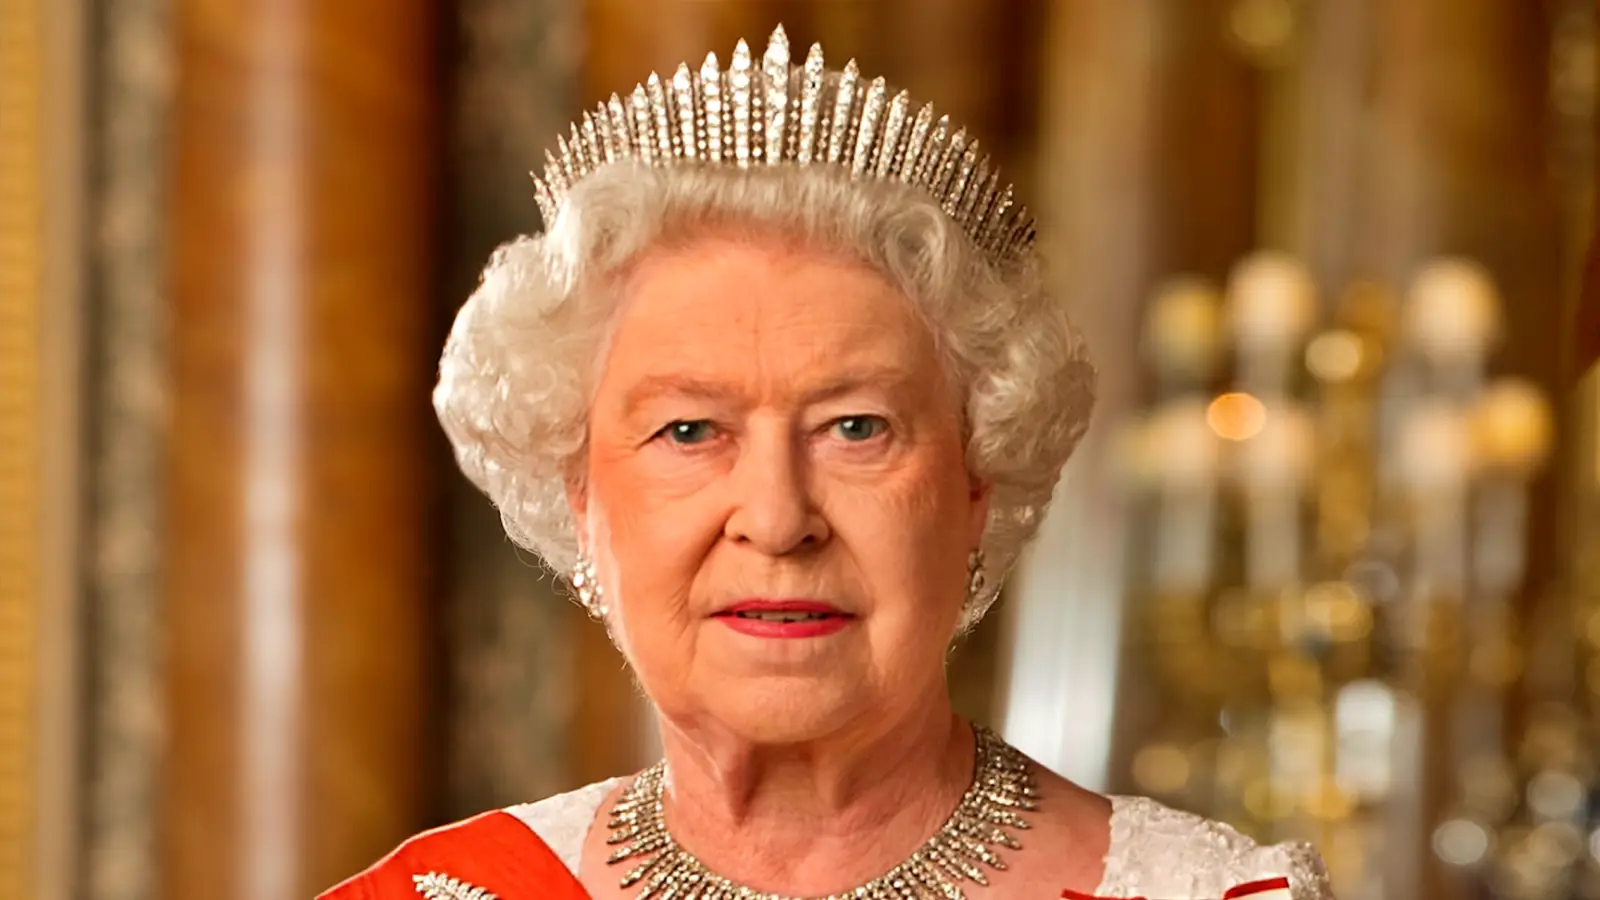 Dronning Elizabeth II døde Charles III, konge af Storbritannien